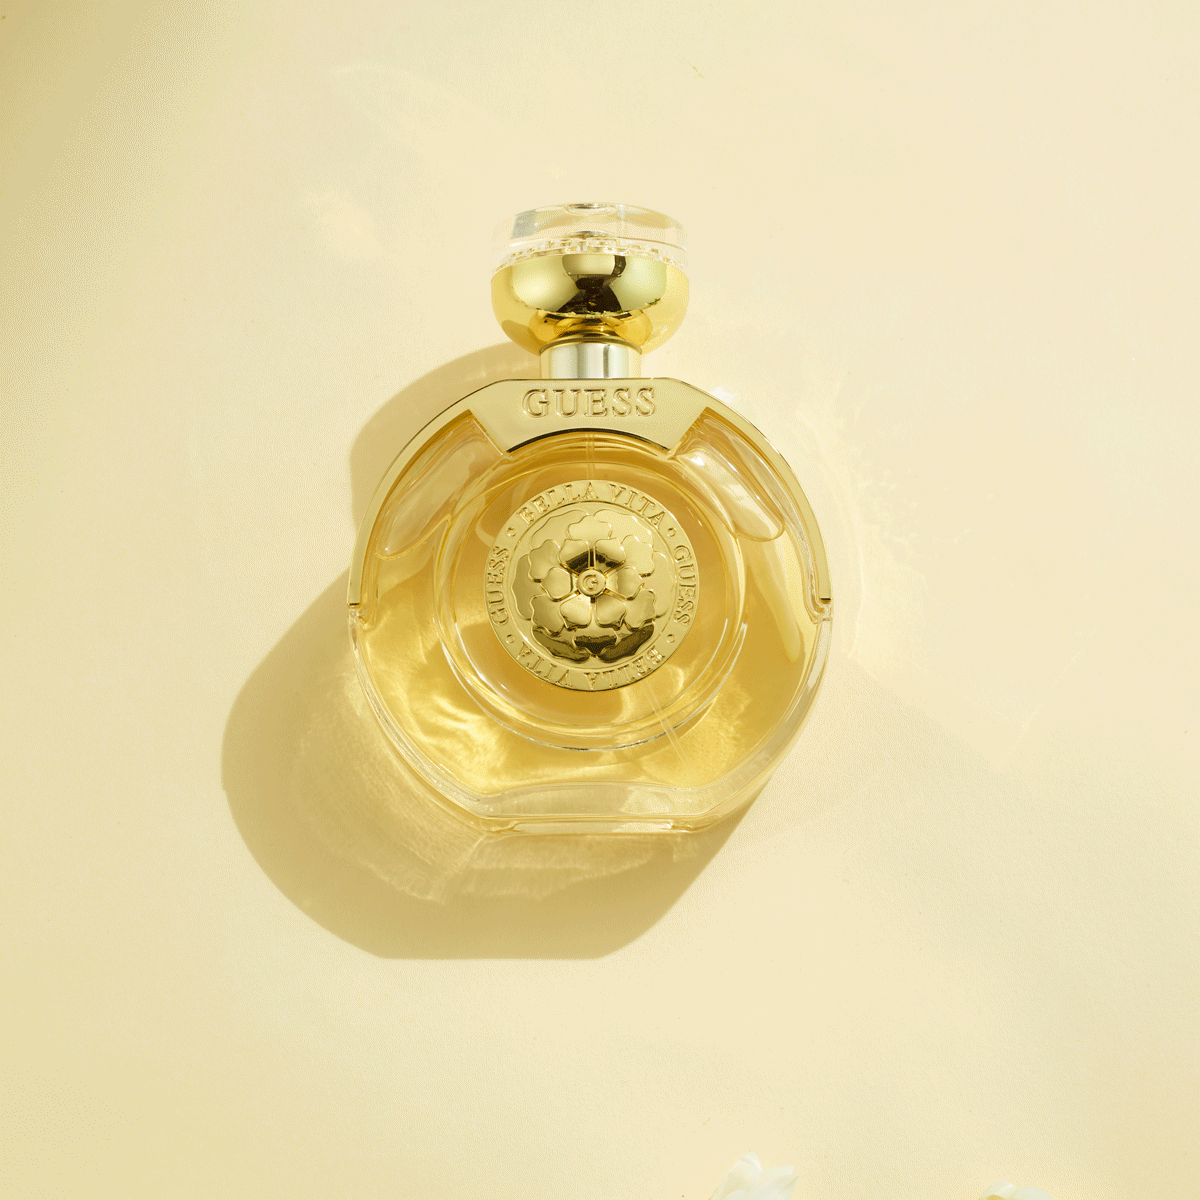 We review the new GUESS Bella Vita Eau de Parfum 2